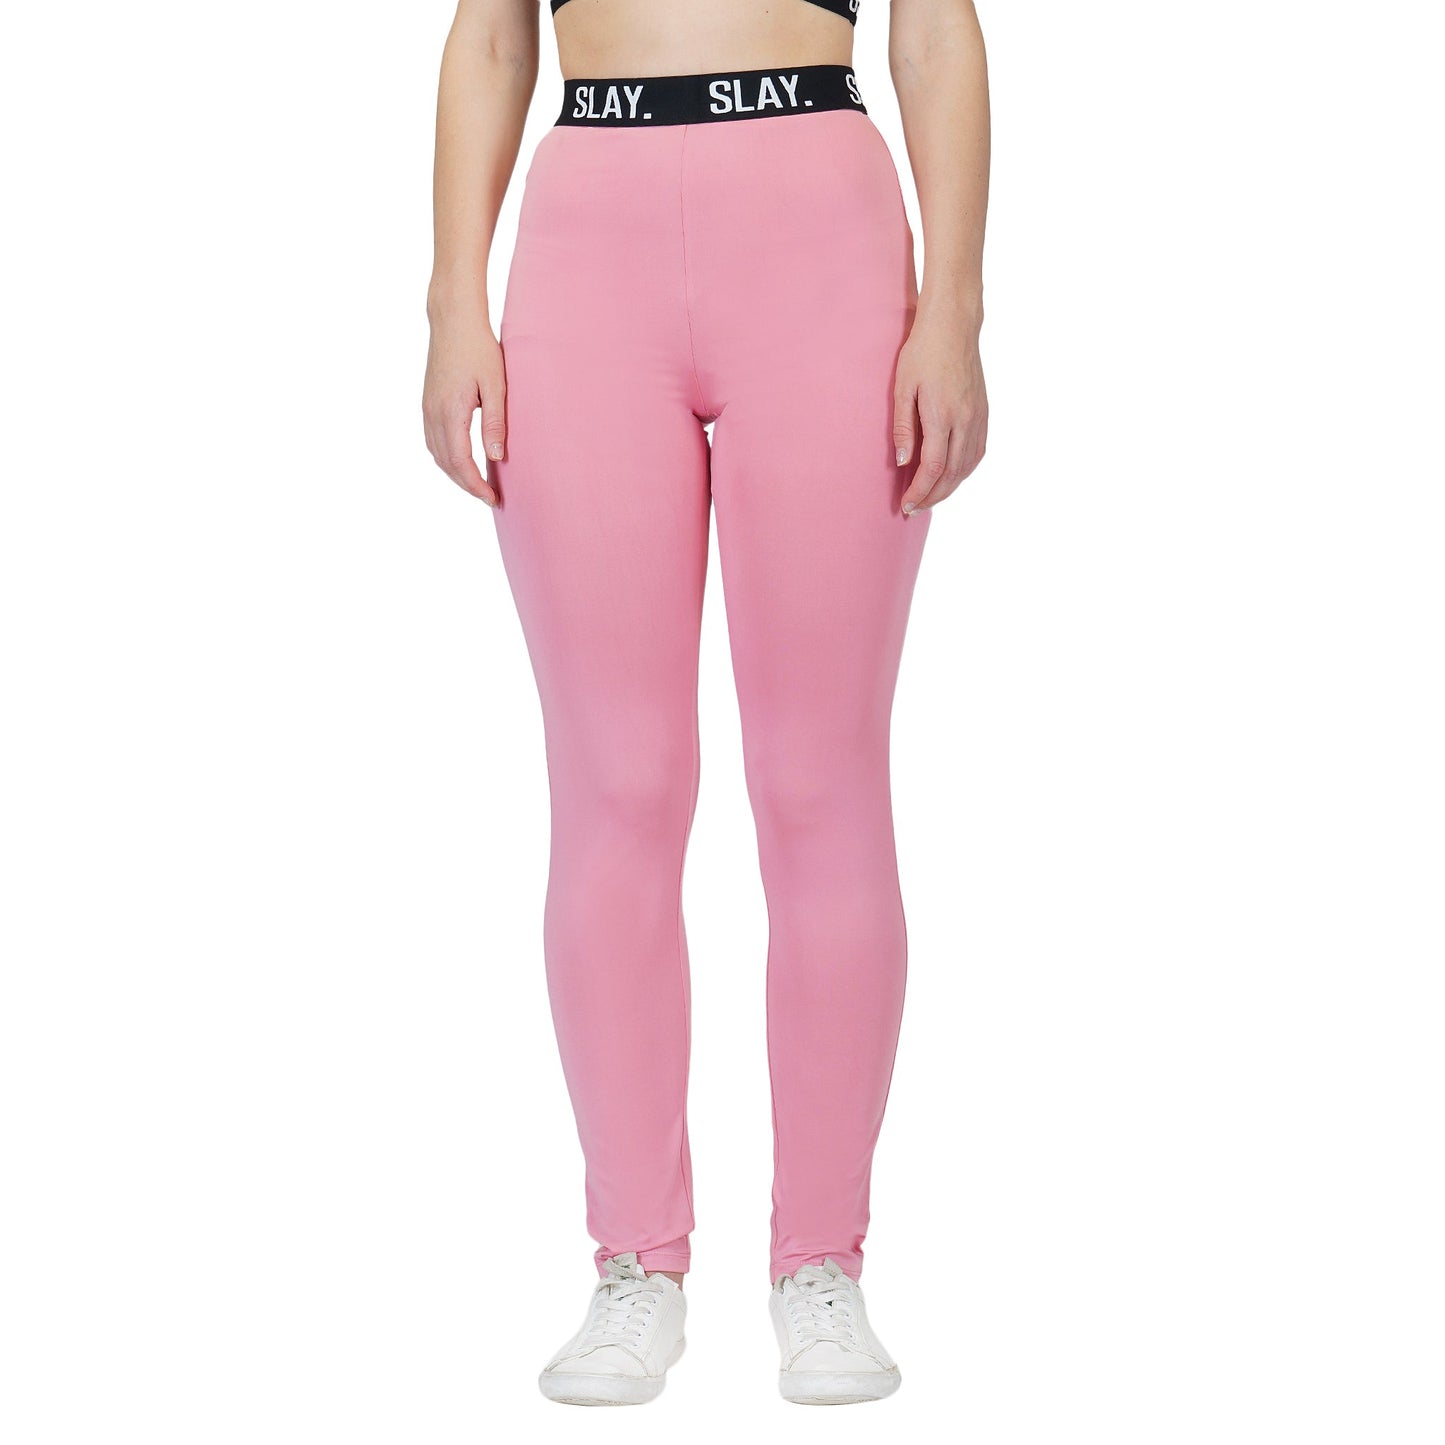 SLAY. Sport Women's Activewear Pants Pink